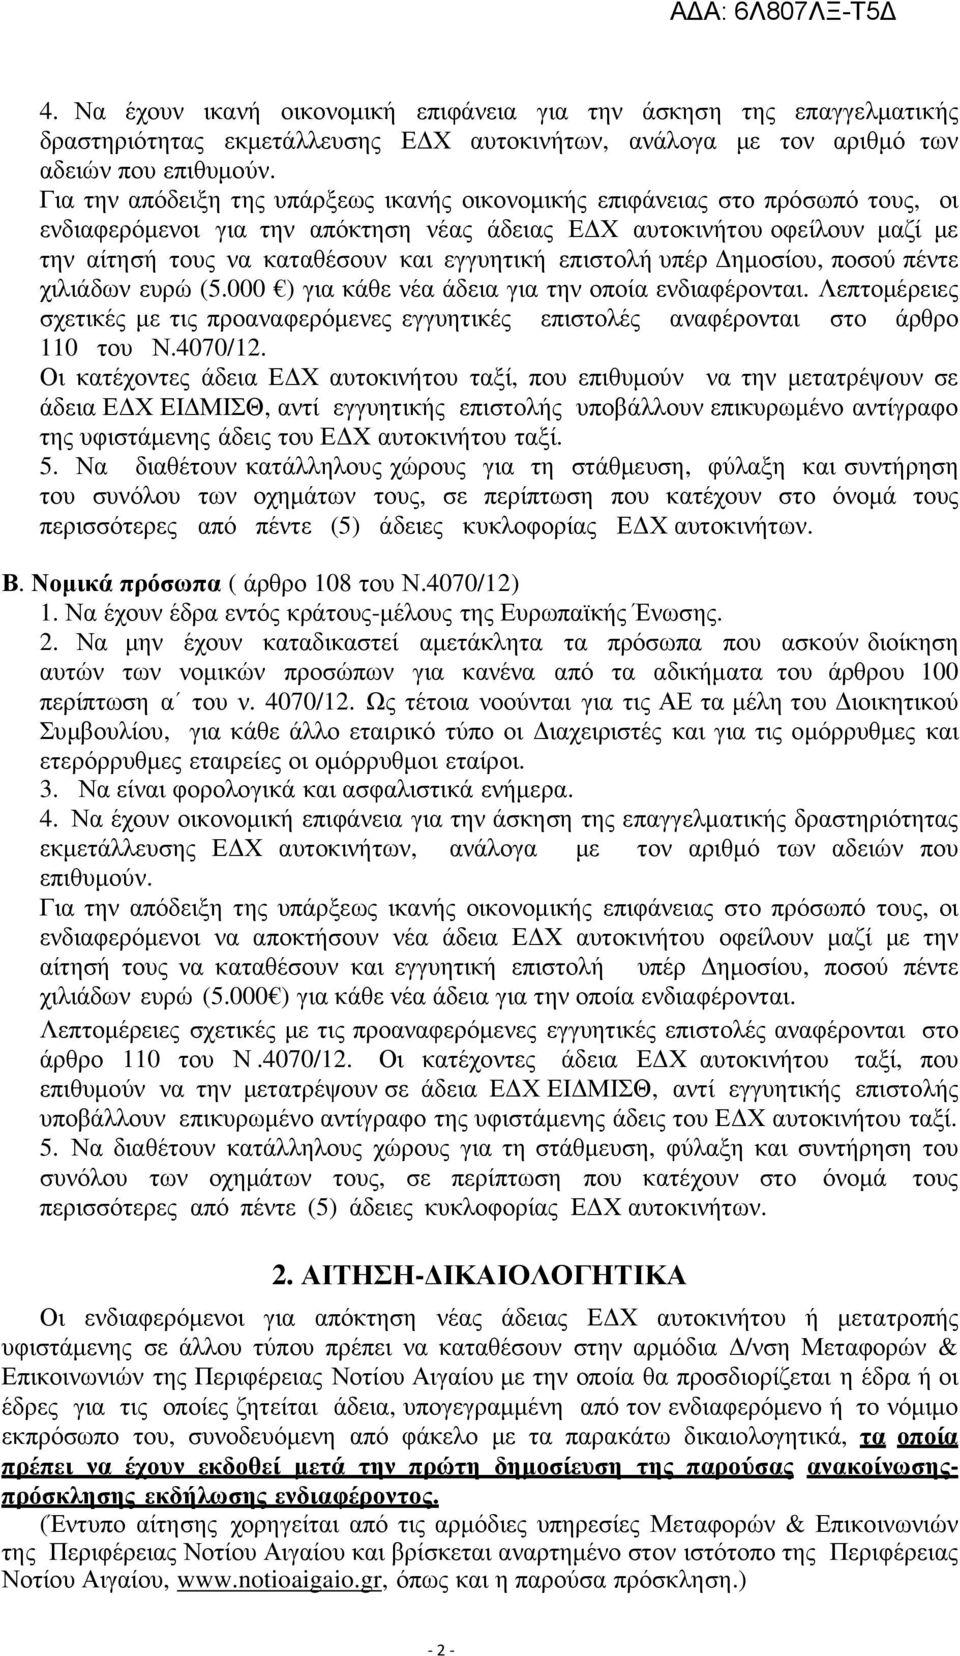 εγγυητική επιστολή υπέρ ηµοσίου, ποσού πέντε χιλιάδων ευρώ (5.000 ) για κάθε νέα άδεια για την οποία ενδιαφέρονται.